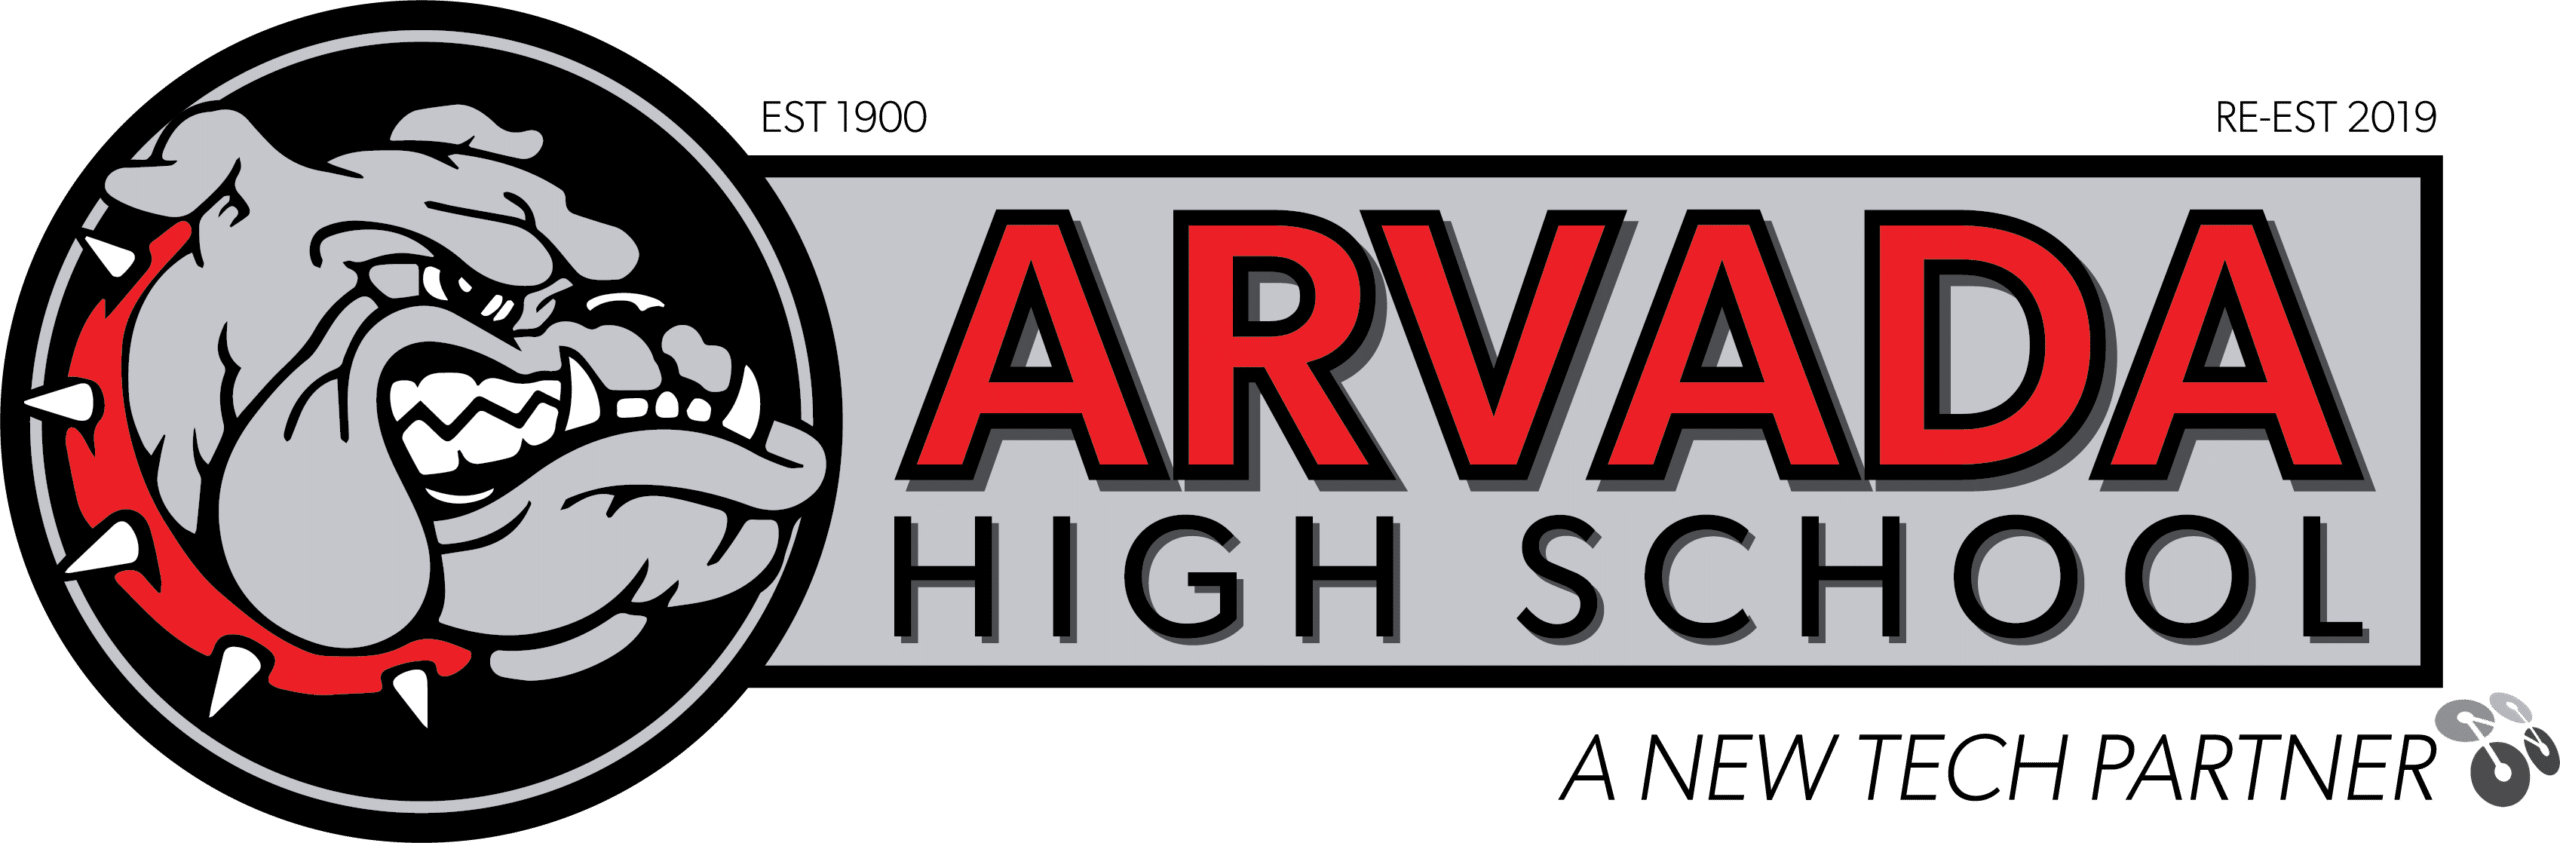 Arvada High School